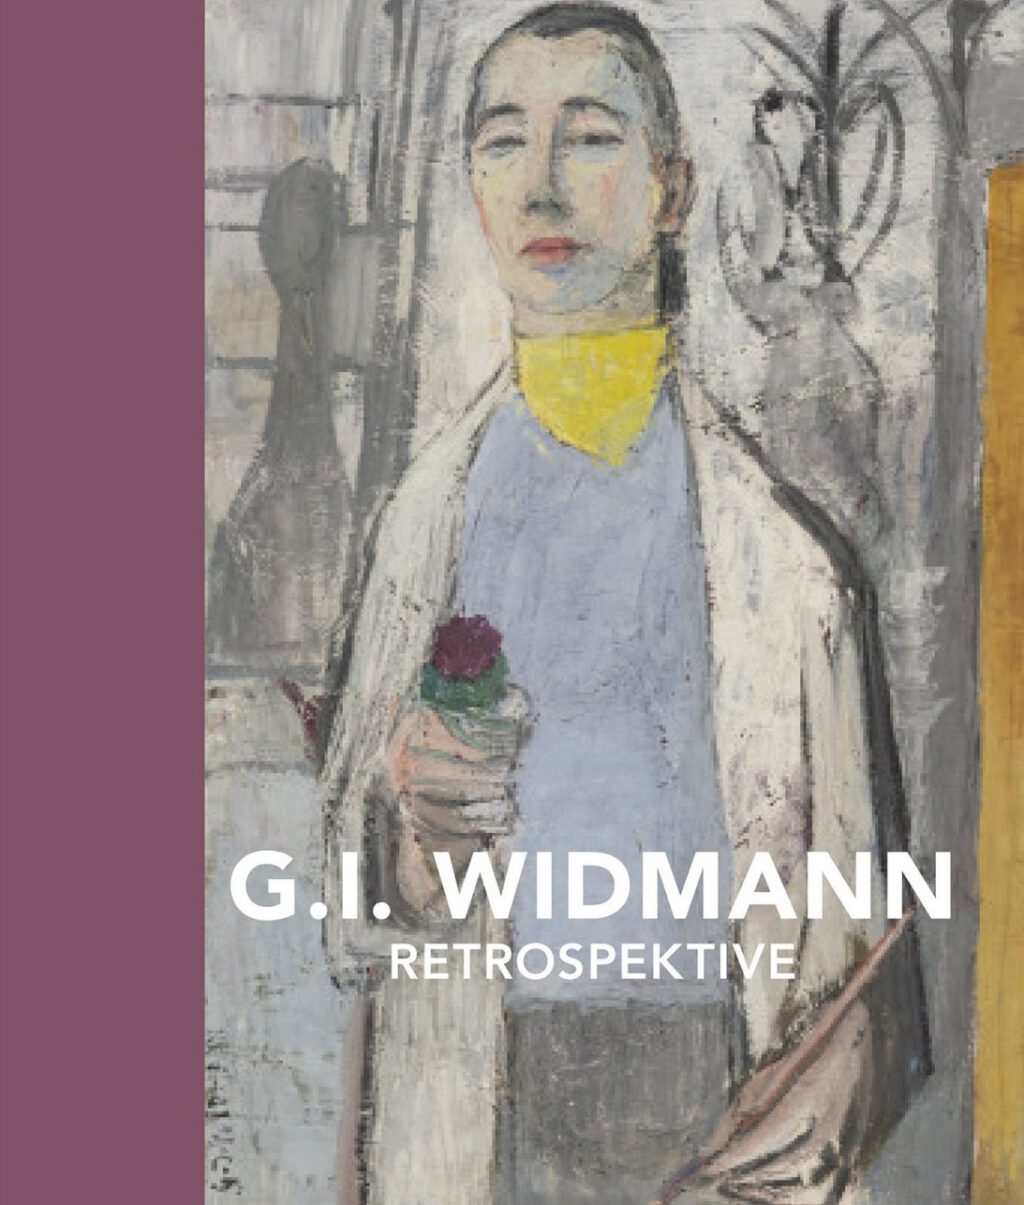 G. I. Widmann